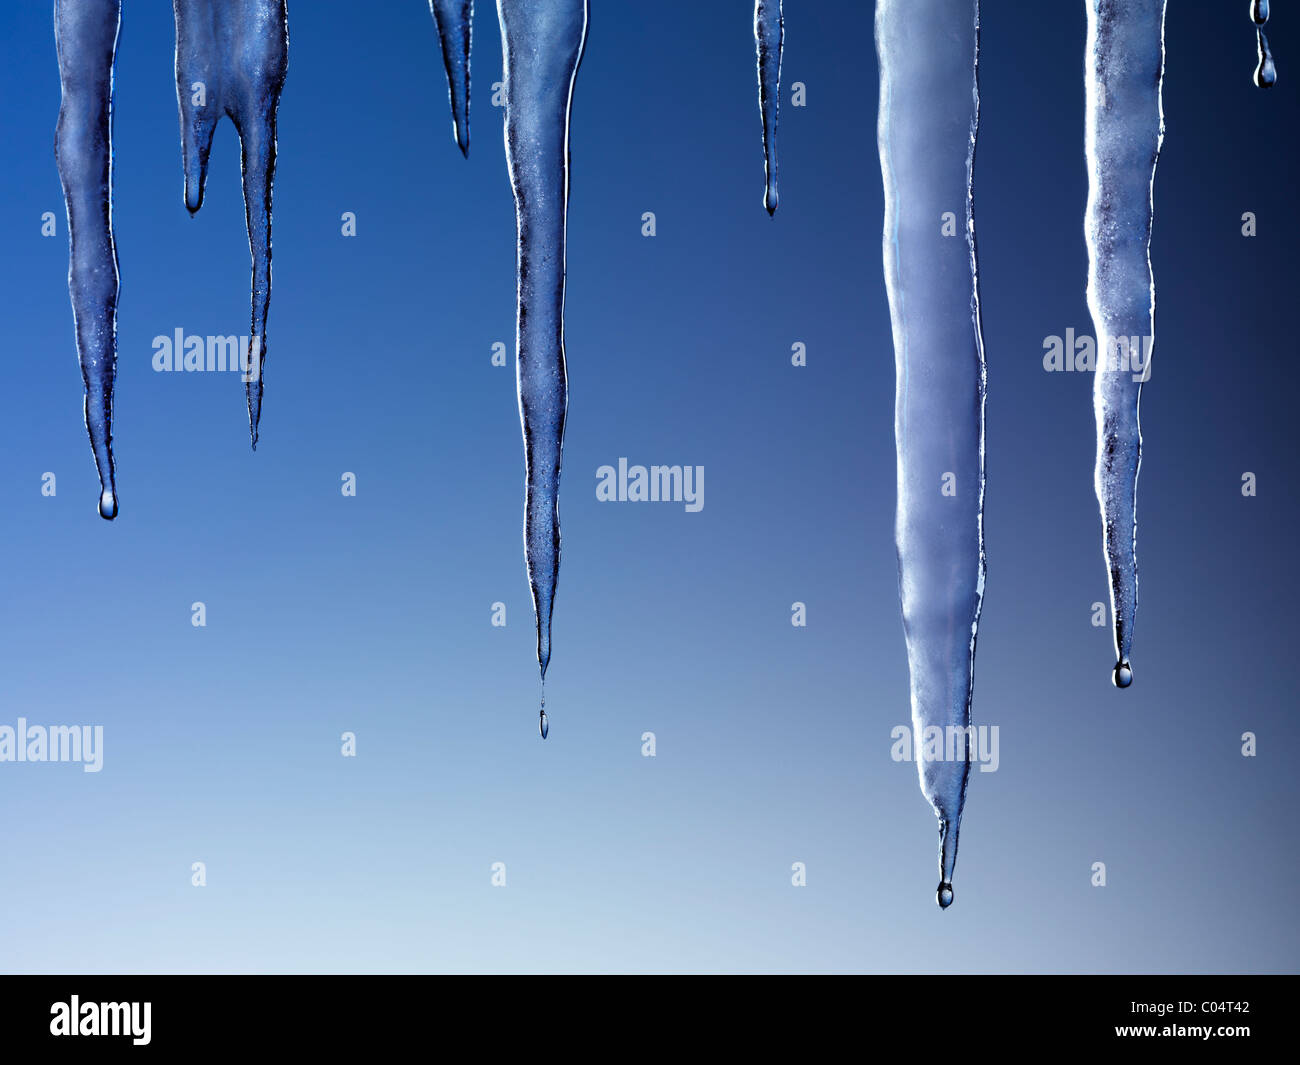 Melting icicles isolated on blue background Stock Photo